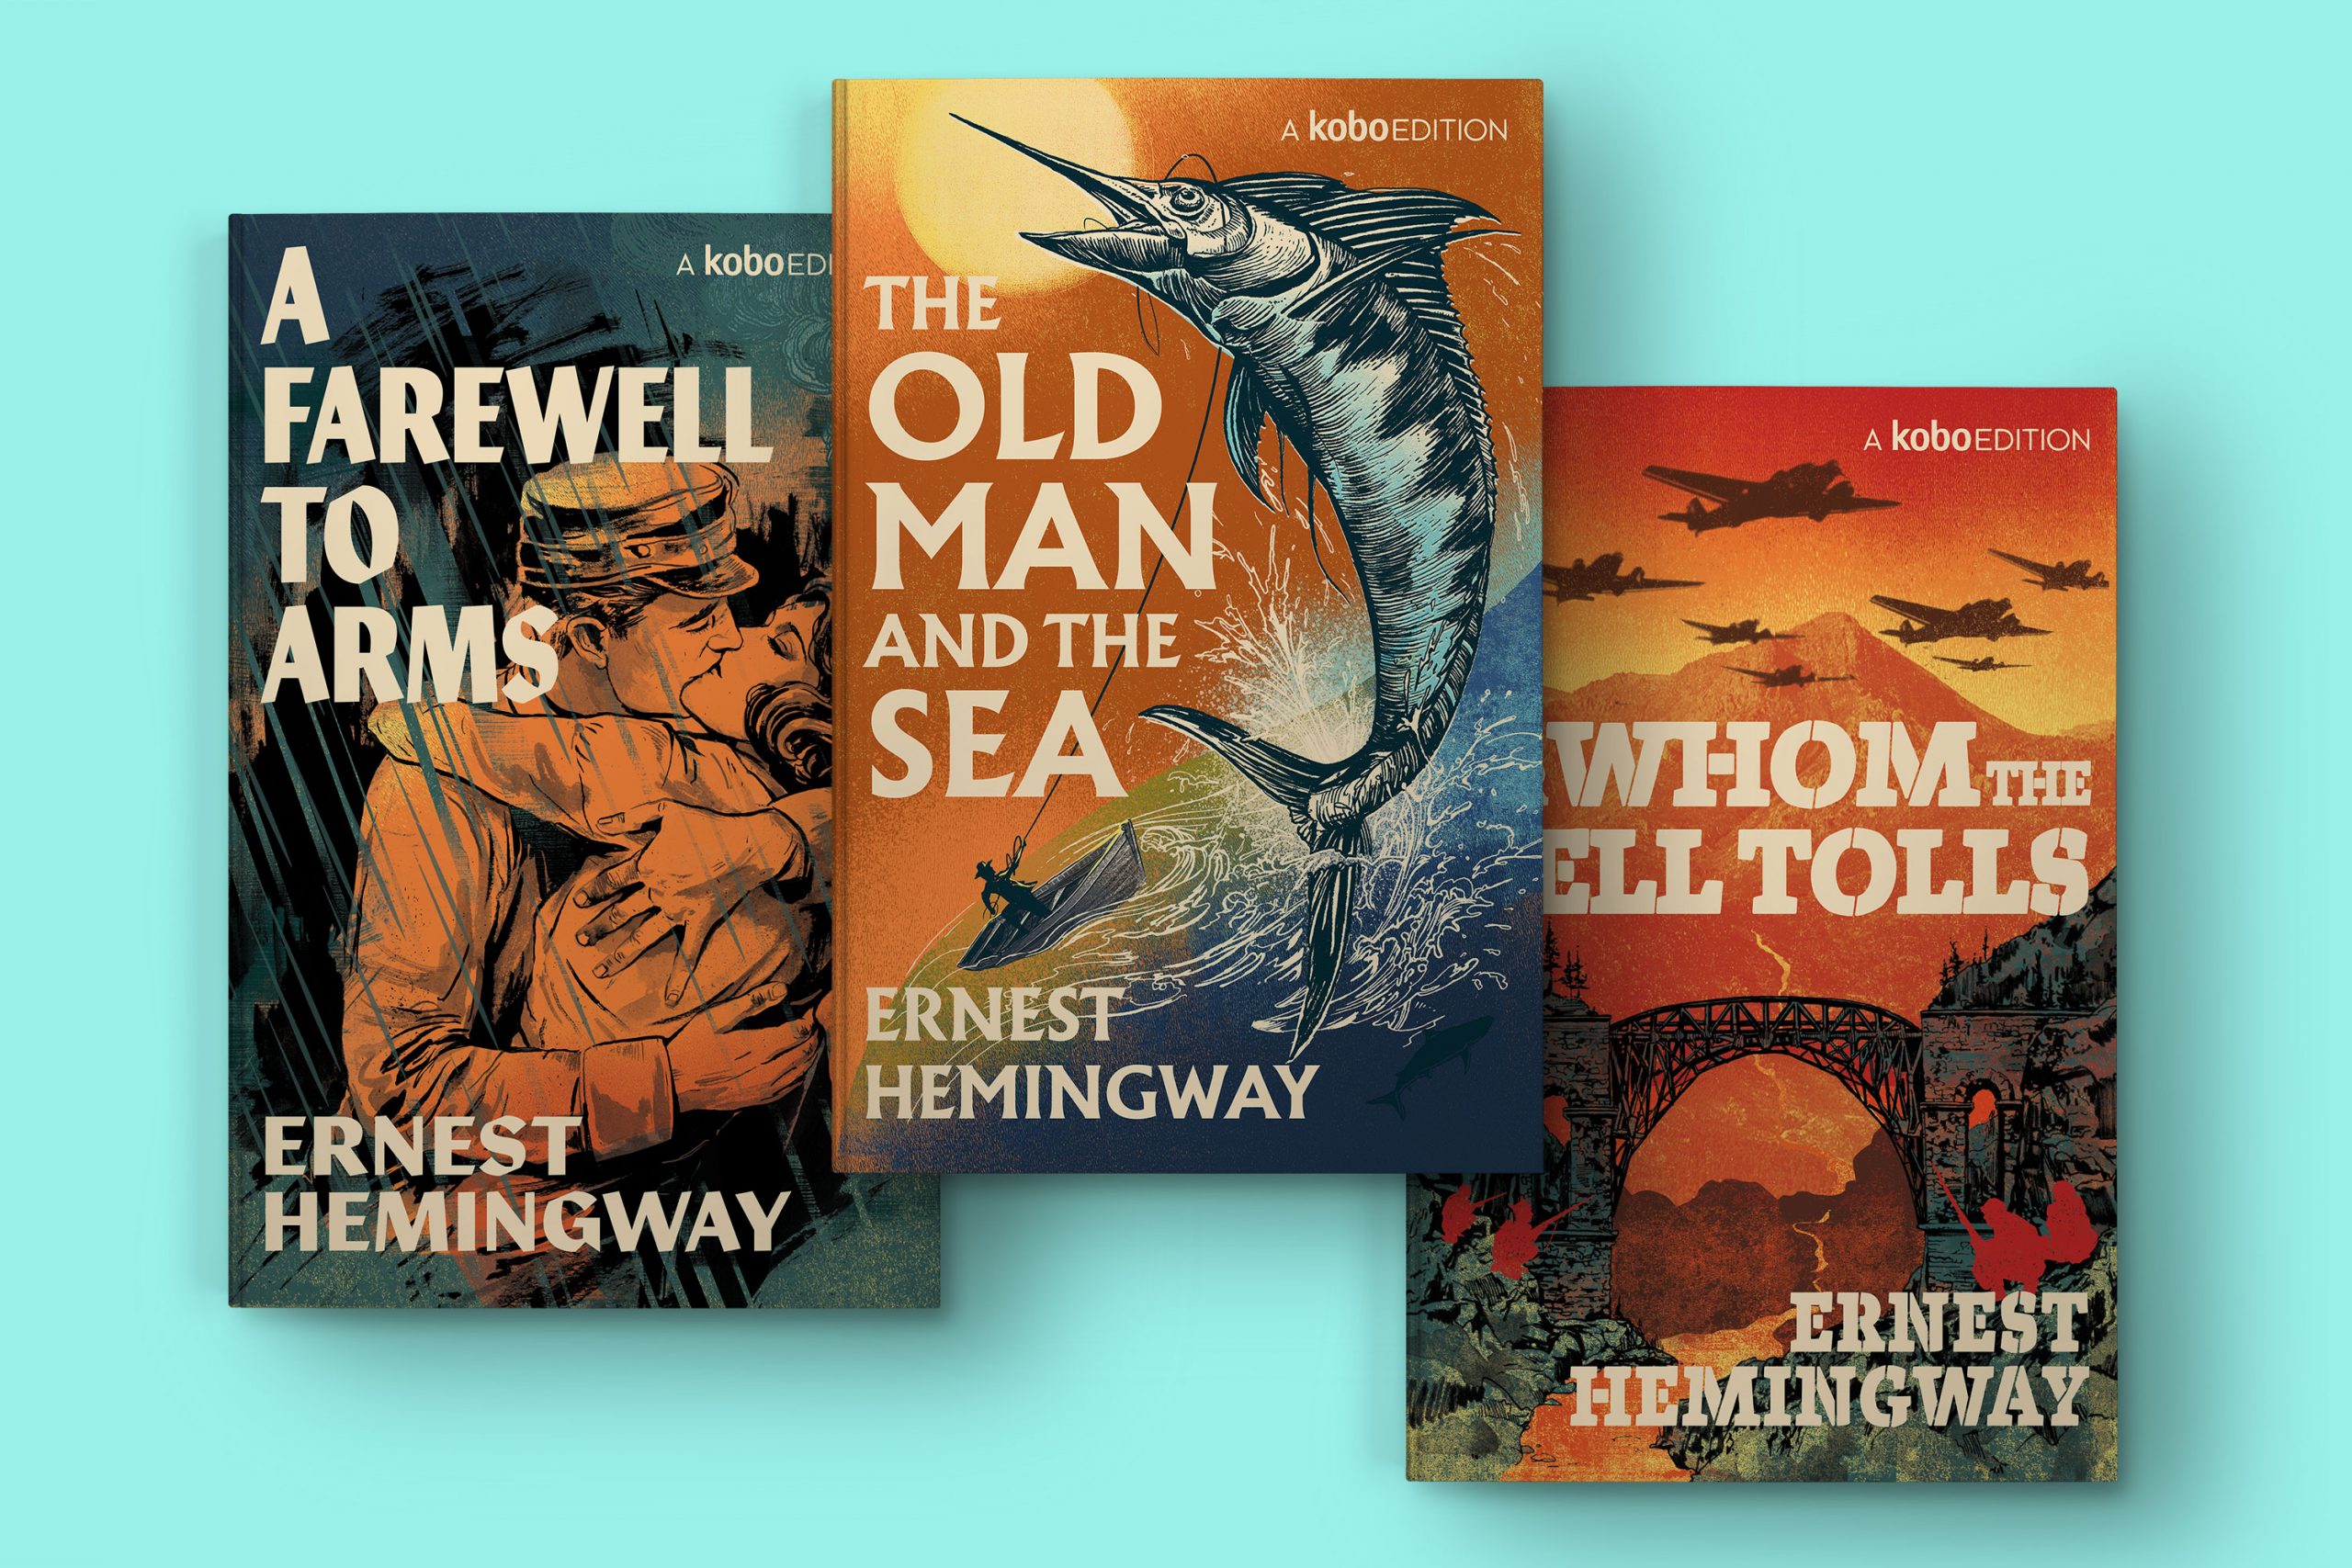 HemingwayBook-mockups-3up-stack-3000-scaled